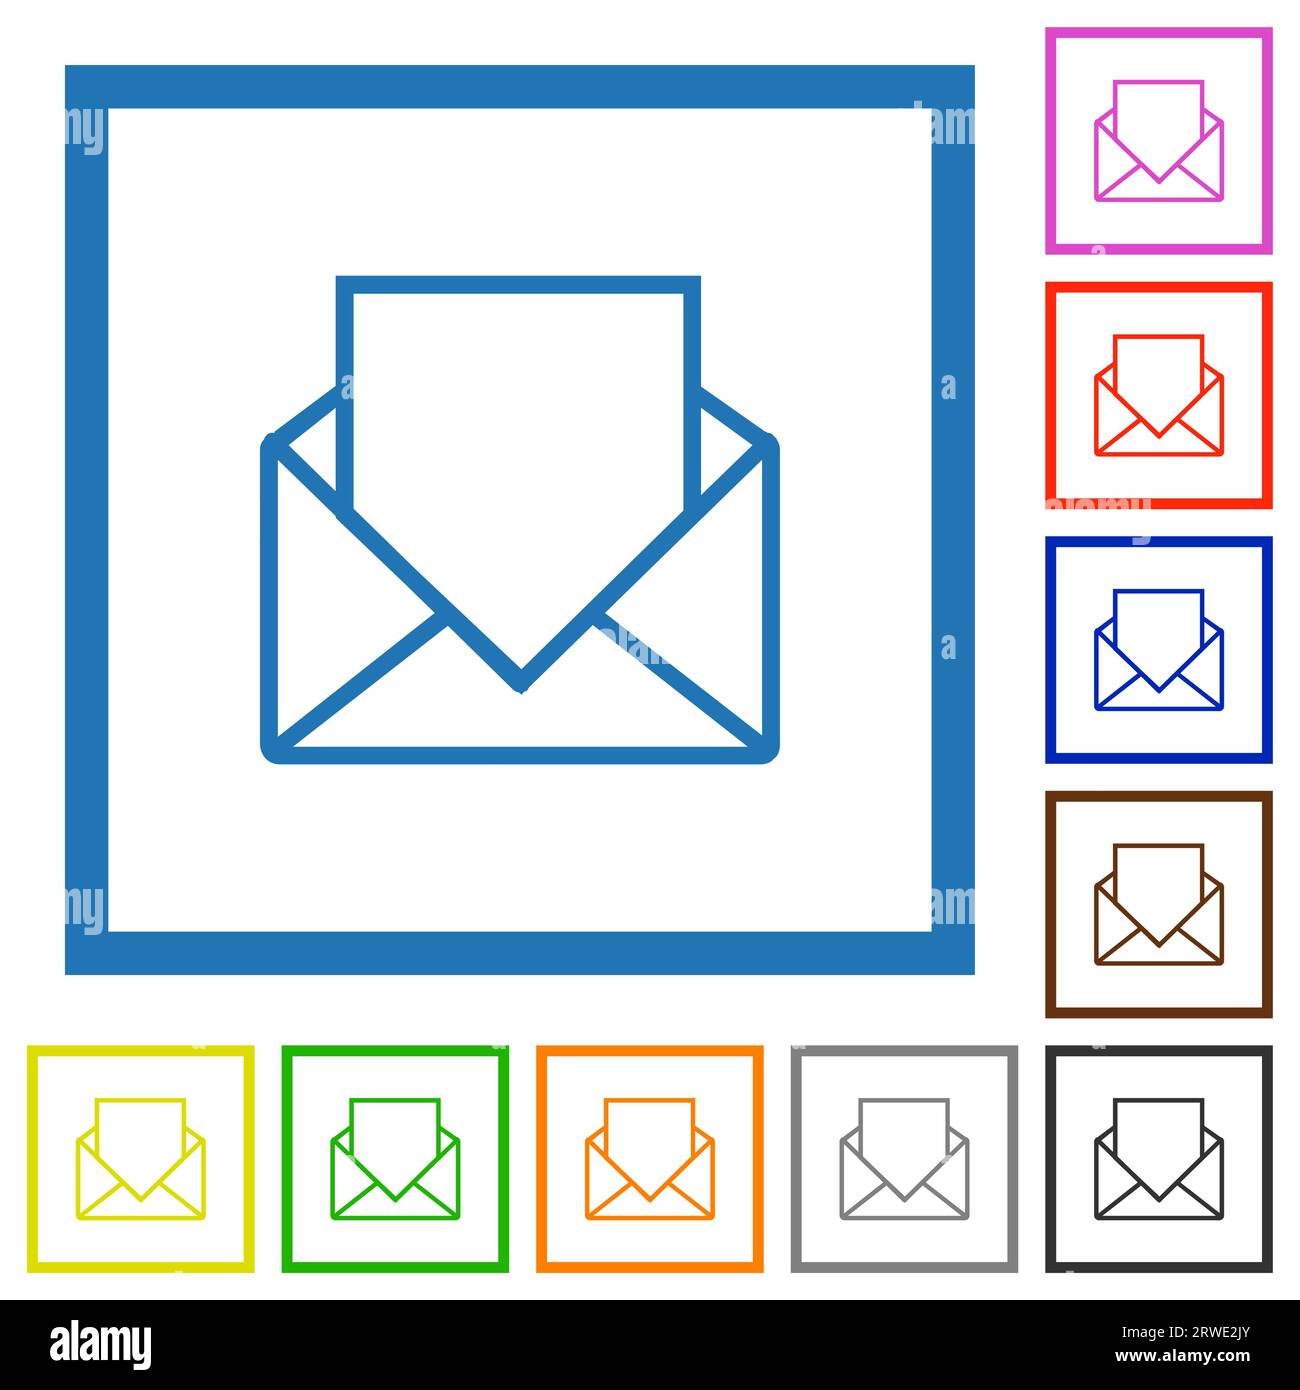 Ouvrez le courrier avec des icônes de couleur plate de contour de lettre vierge dans des cadres carrés sur fond blanc Illustration de Vecteur